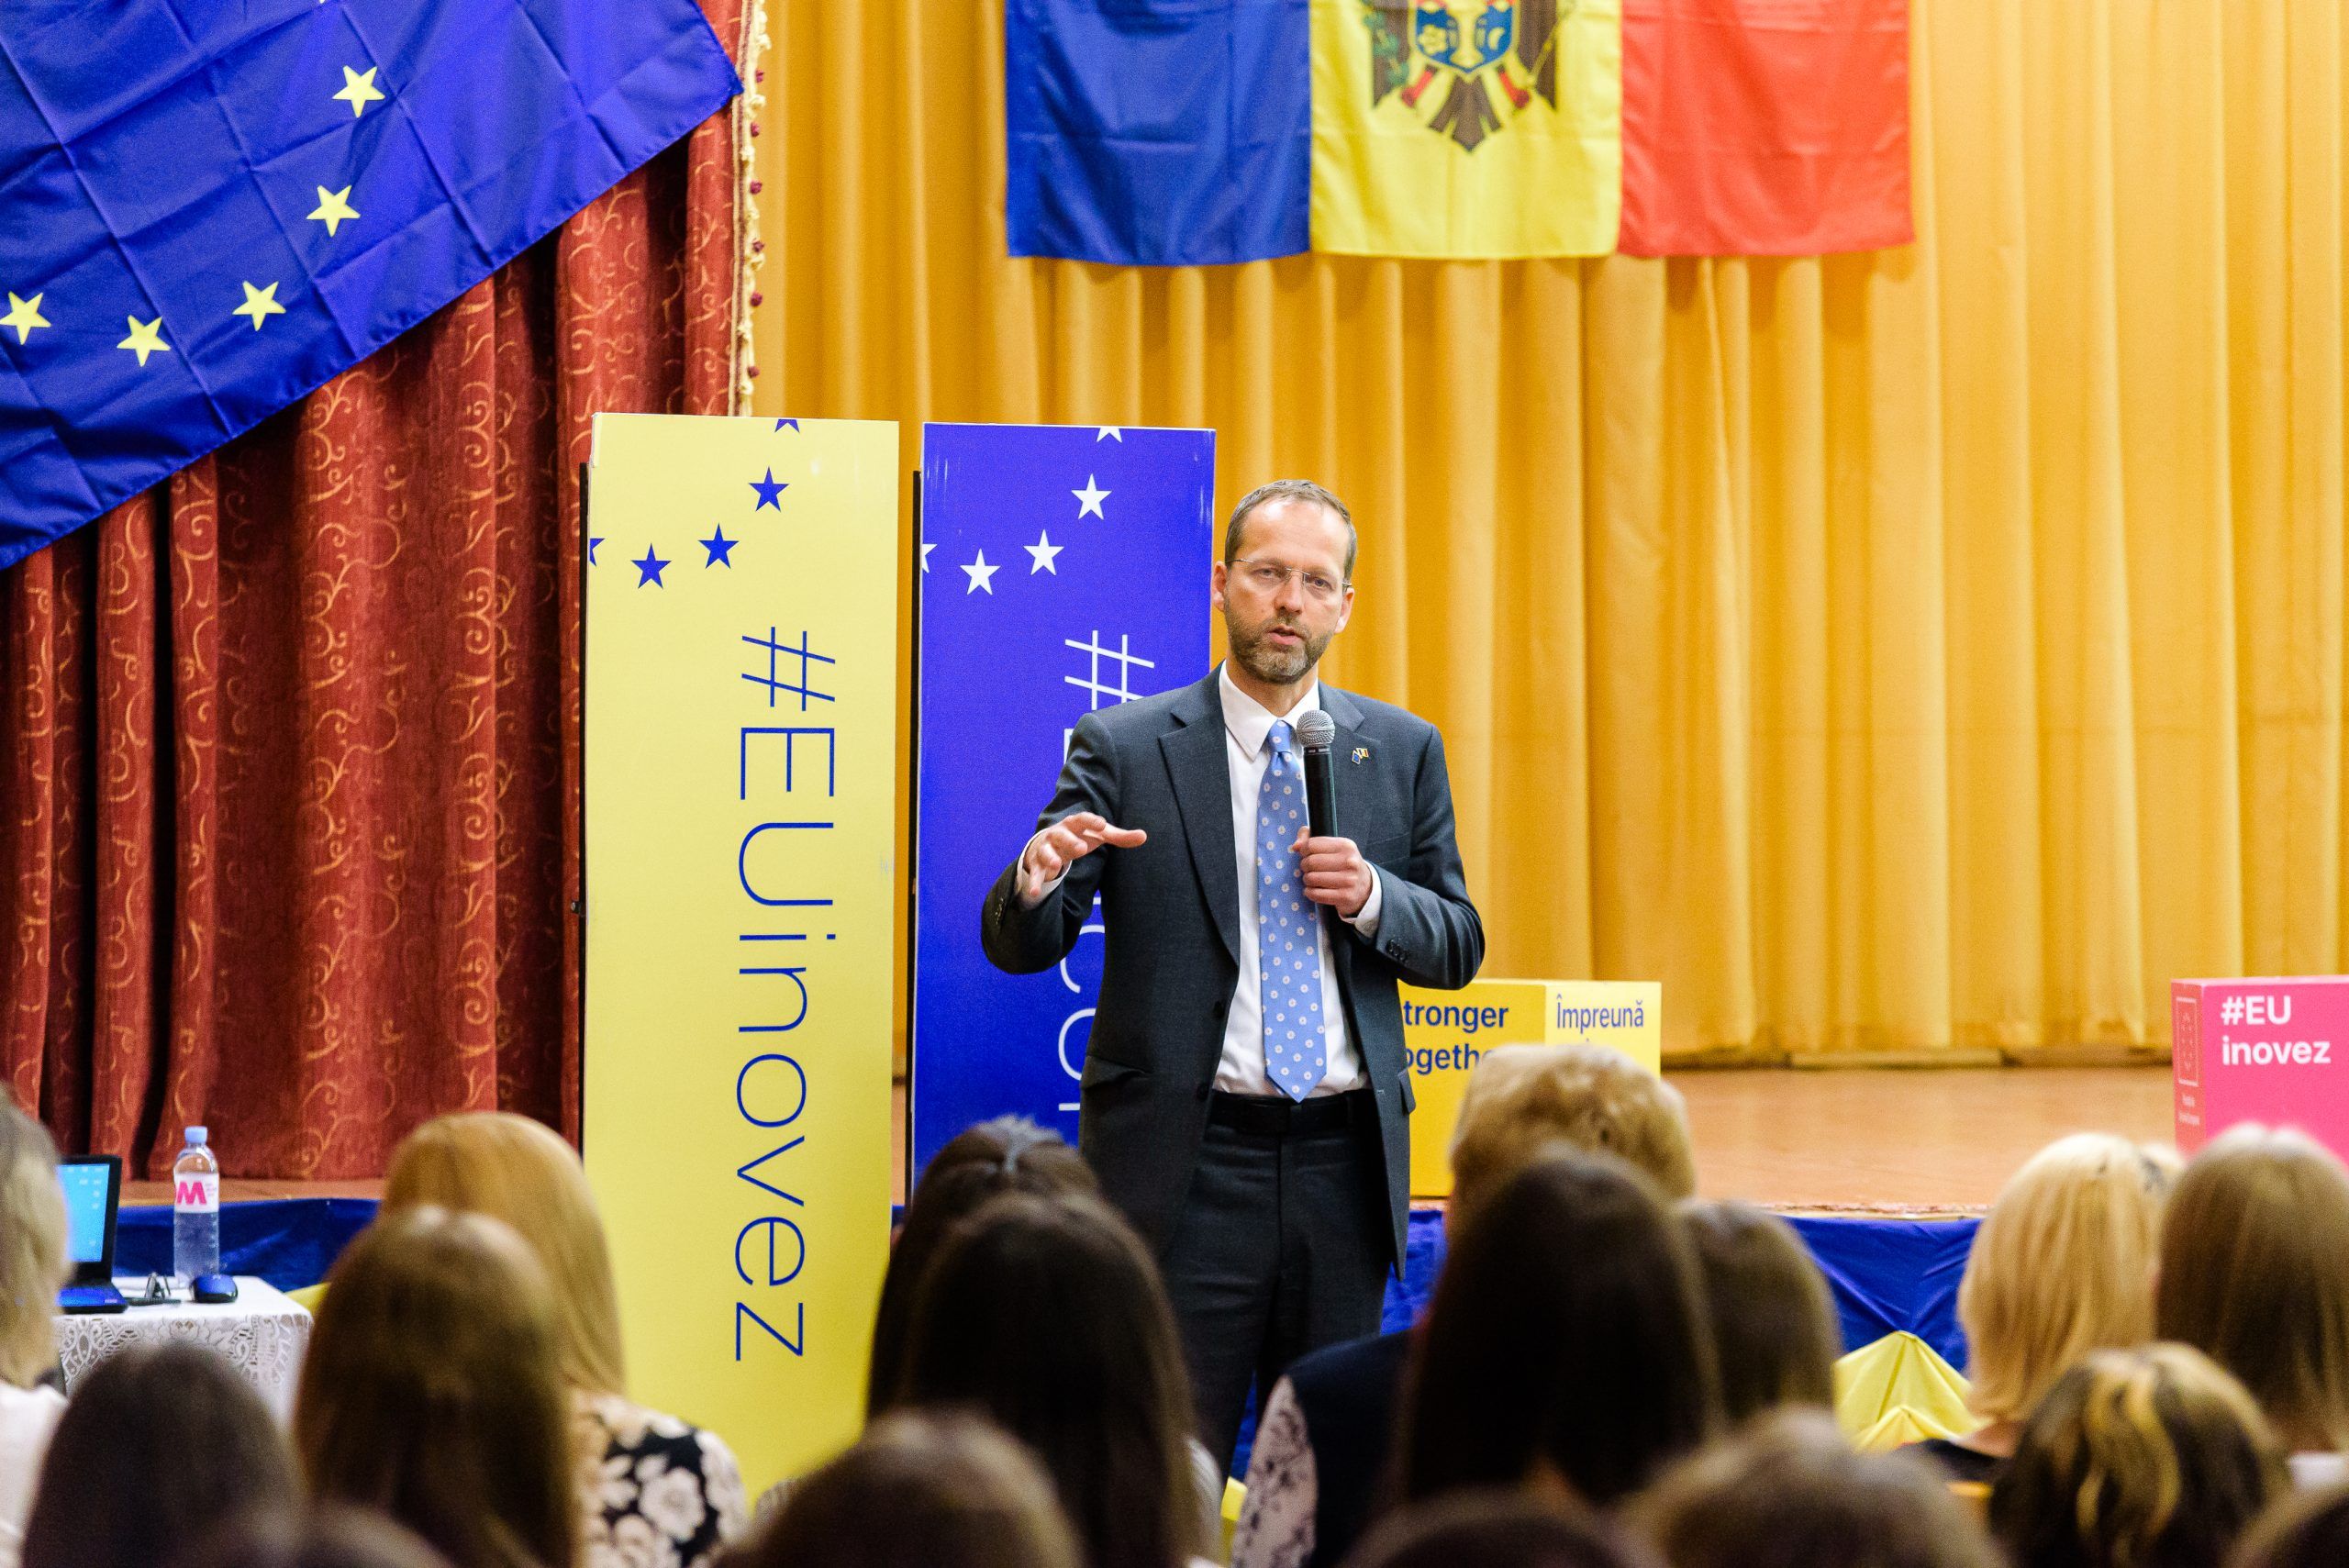 Серия мероприятий EU Talks продолжается! На этот раз мы обсудили европейское будущее Молдовы с учениками Теоретического Лицея имени Василе Александри, Кишинэу.